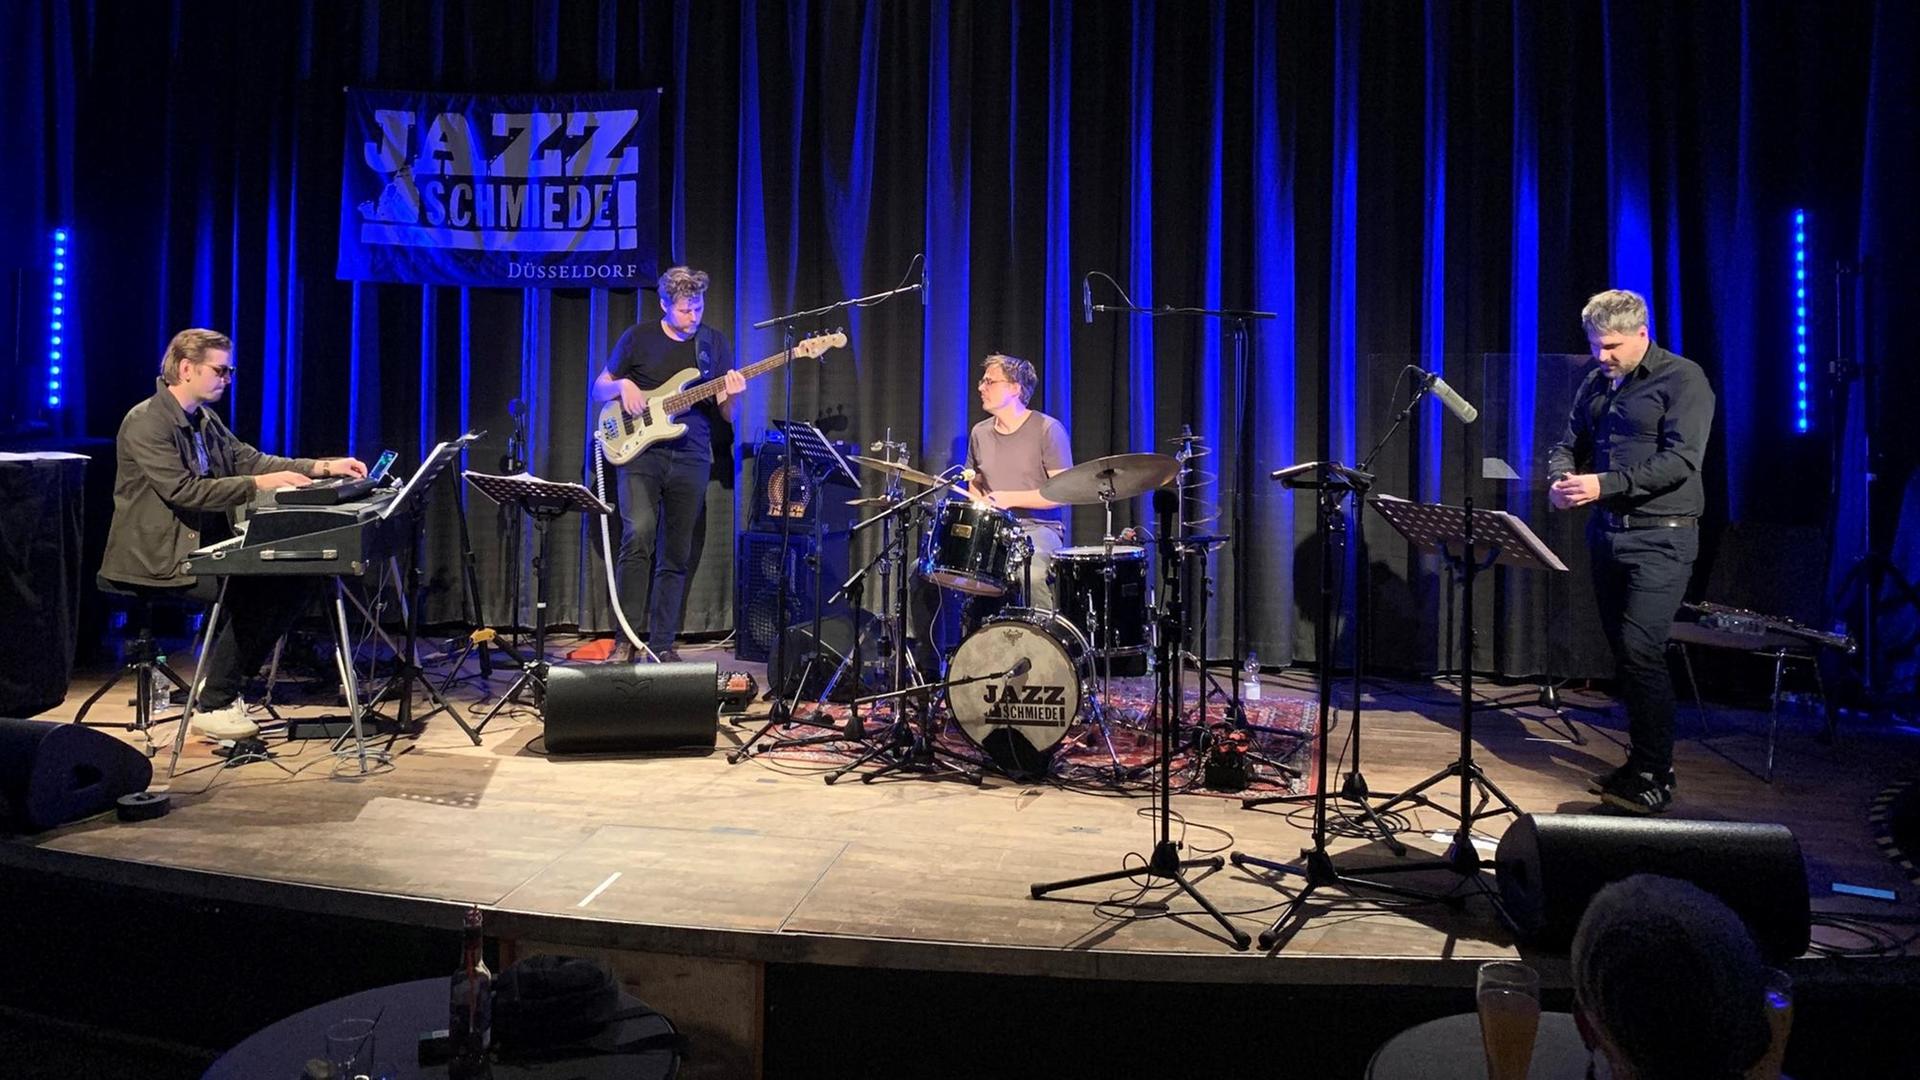 Auf einer Bühne spielen v.l. ein Keyboarder, Bassist, Drummer und Saxofonist zusammen, im Hintergrund ist ein blau angeleuchteter Vorhang und ein Plakat der Jazzschmiede zu sehen.